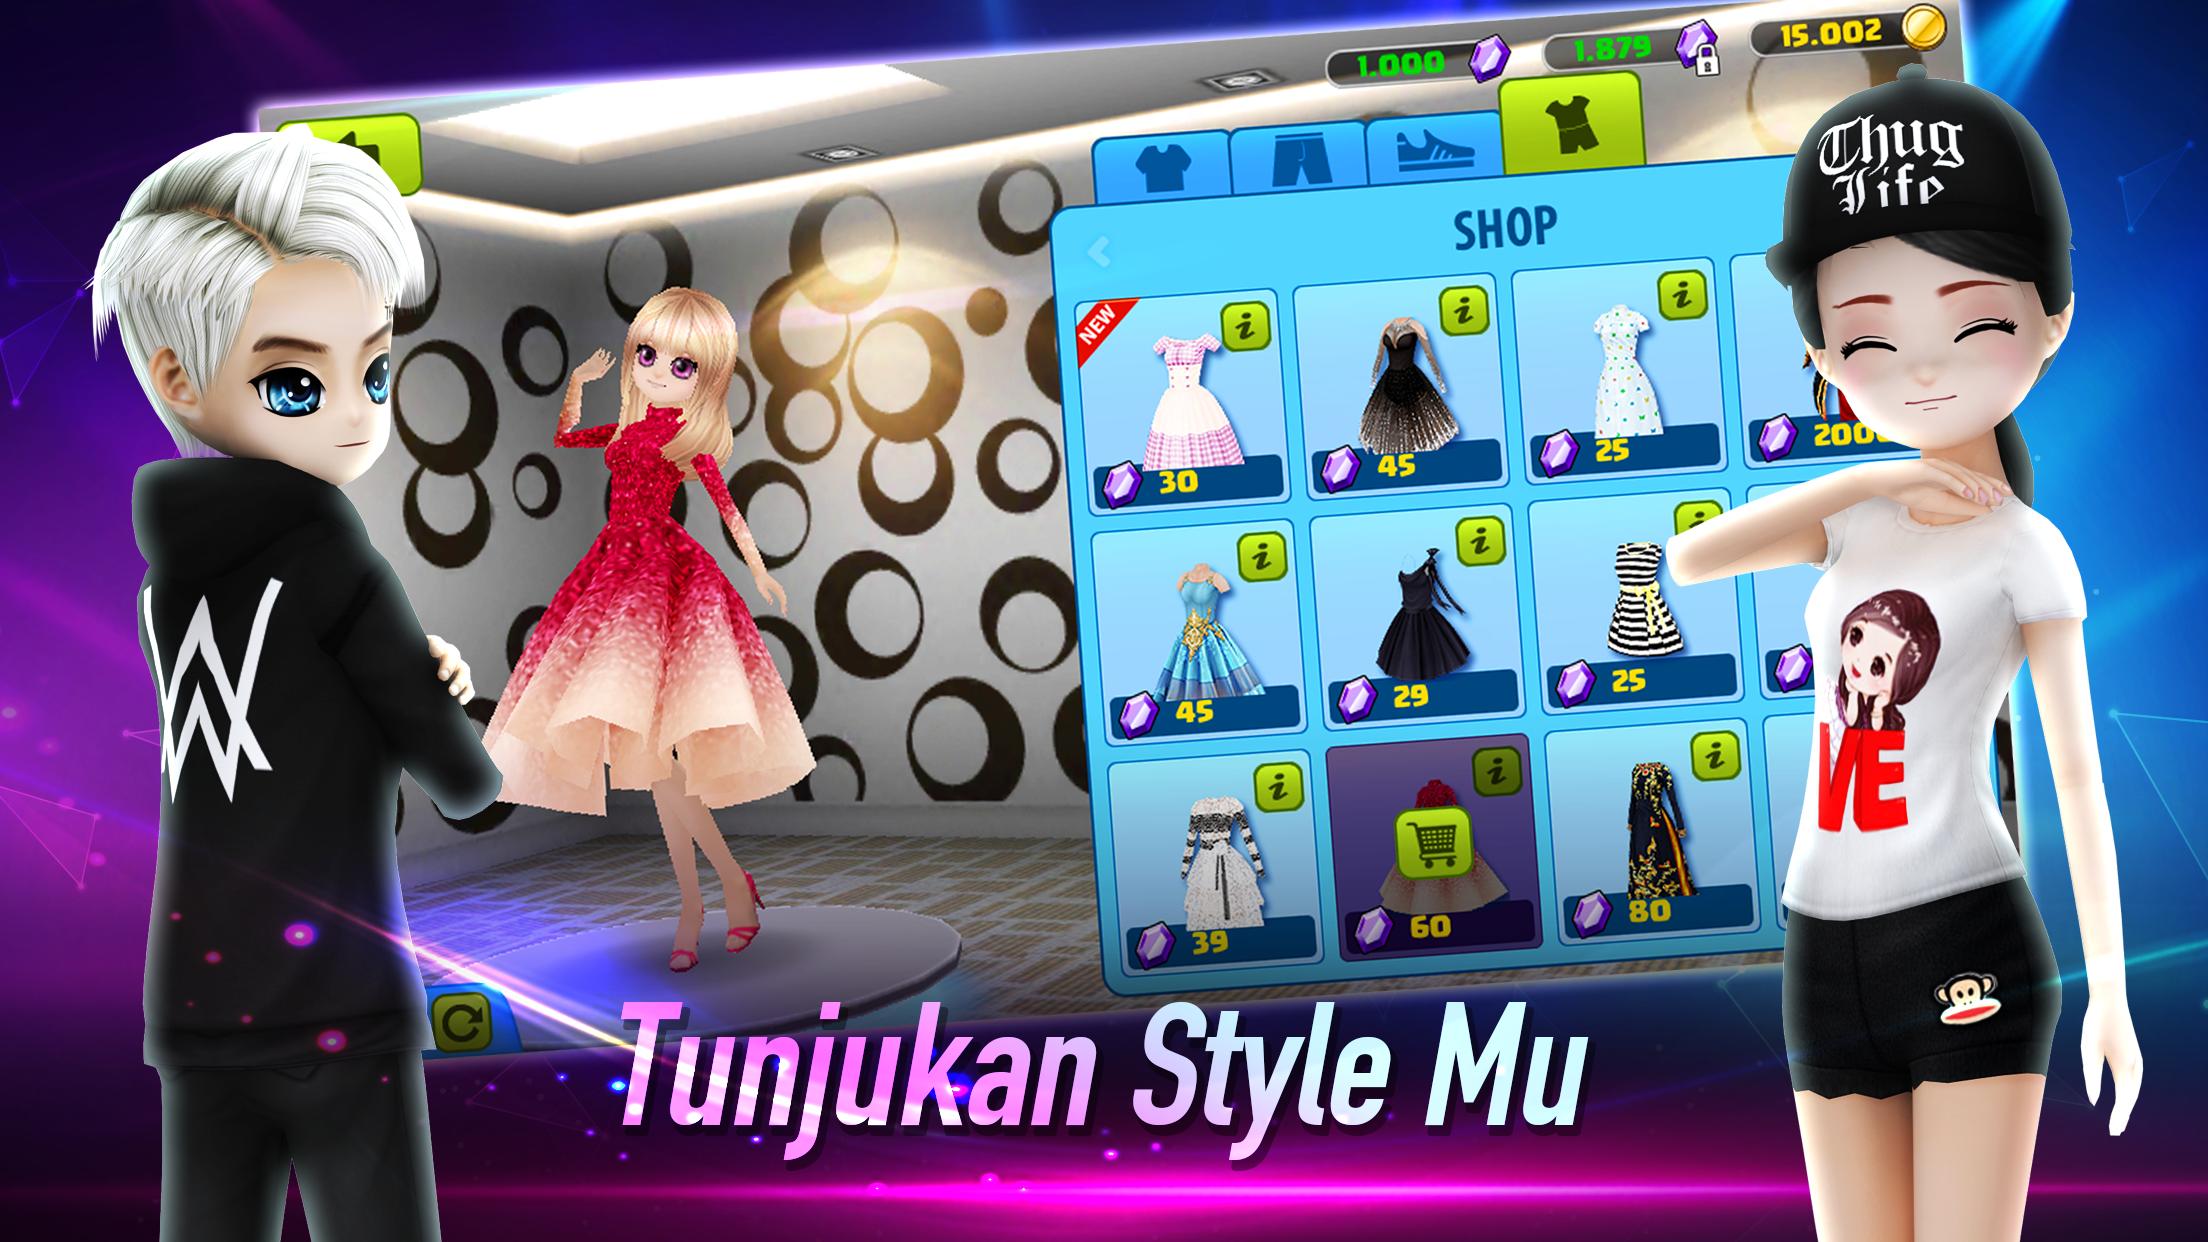 AVATAR MUSIK INDONESIA - Social Dancing Game 1.0.1 Screenshot 19